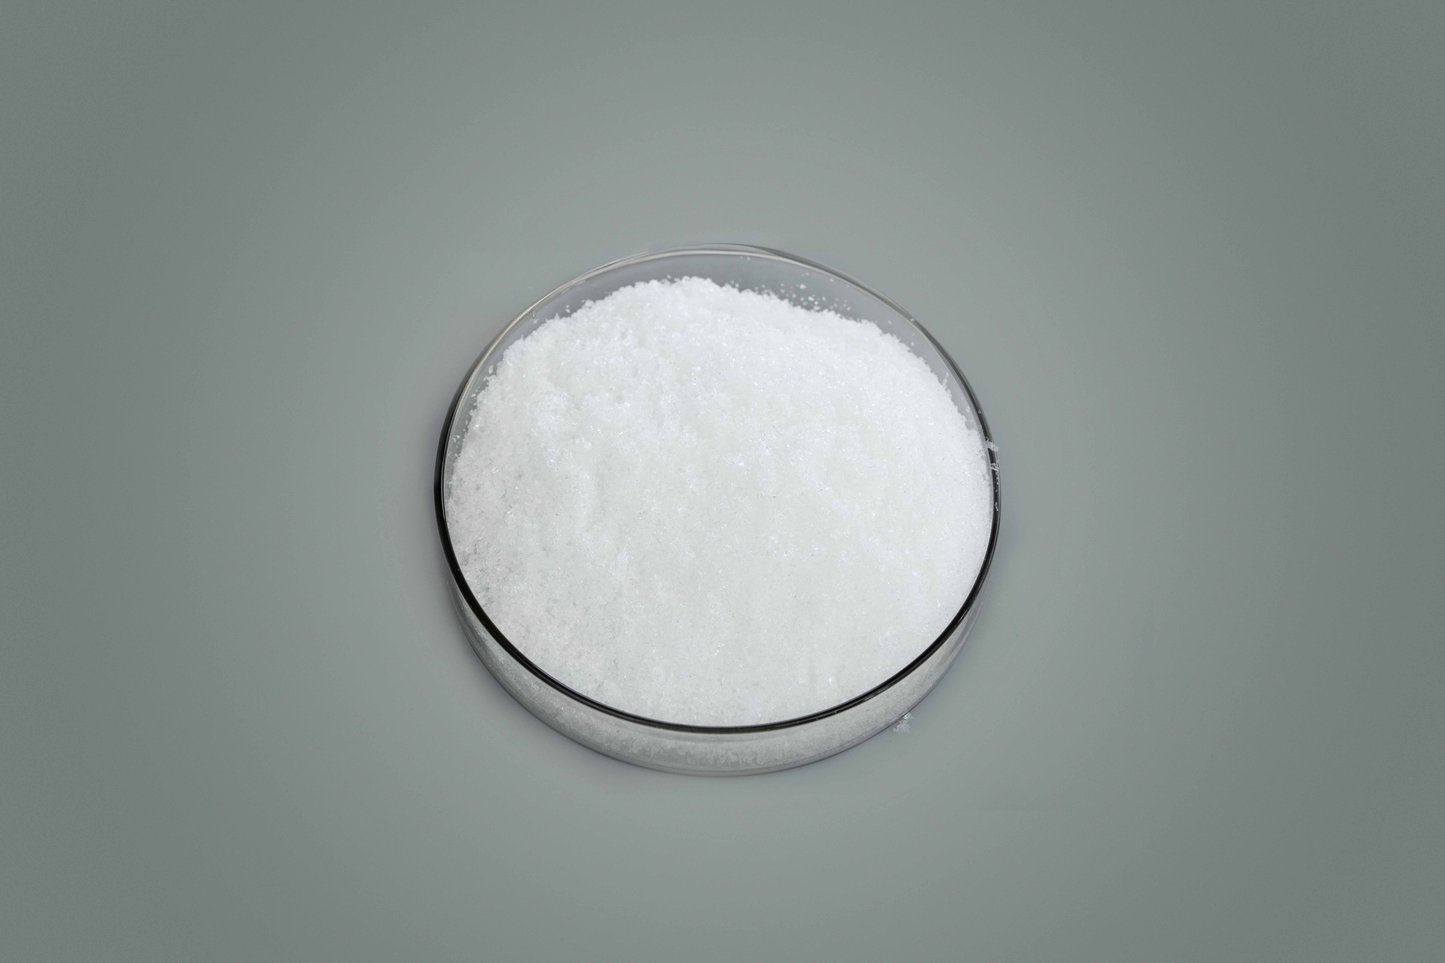 Food additive Dicalcium Phosphate